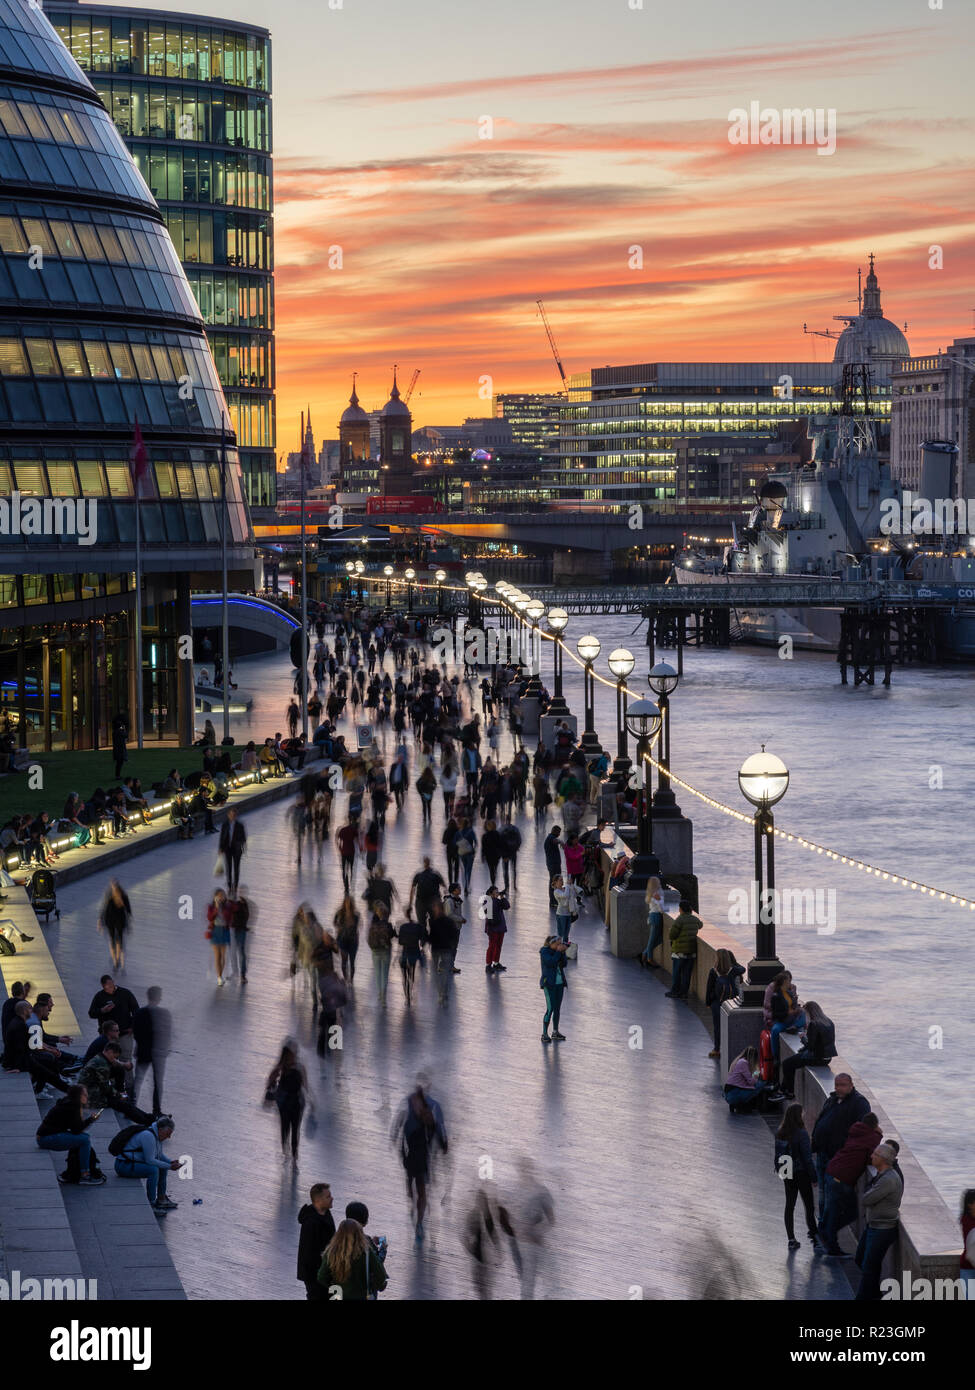 London, England, Regno Unito - 27 Settembre 2018: pedoni e turisti a piedi lungo il fiume Thames Path accanto al Municipio e HMS Belfast al tramonto. Foto Stock